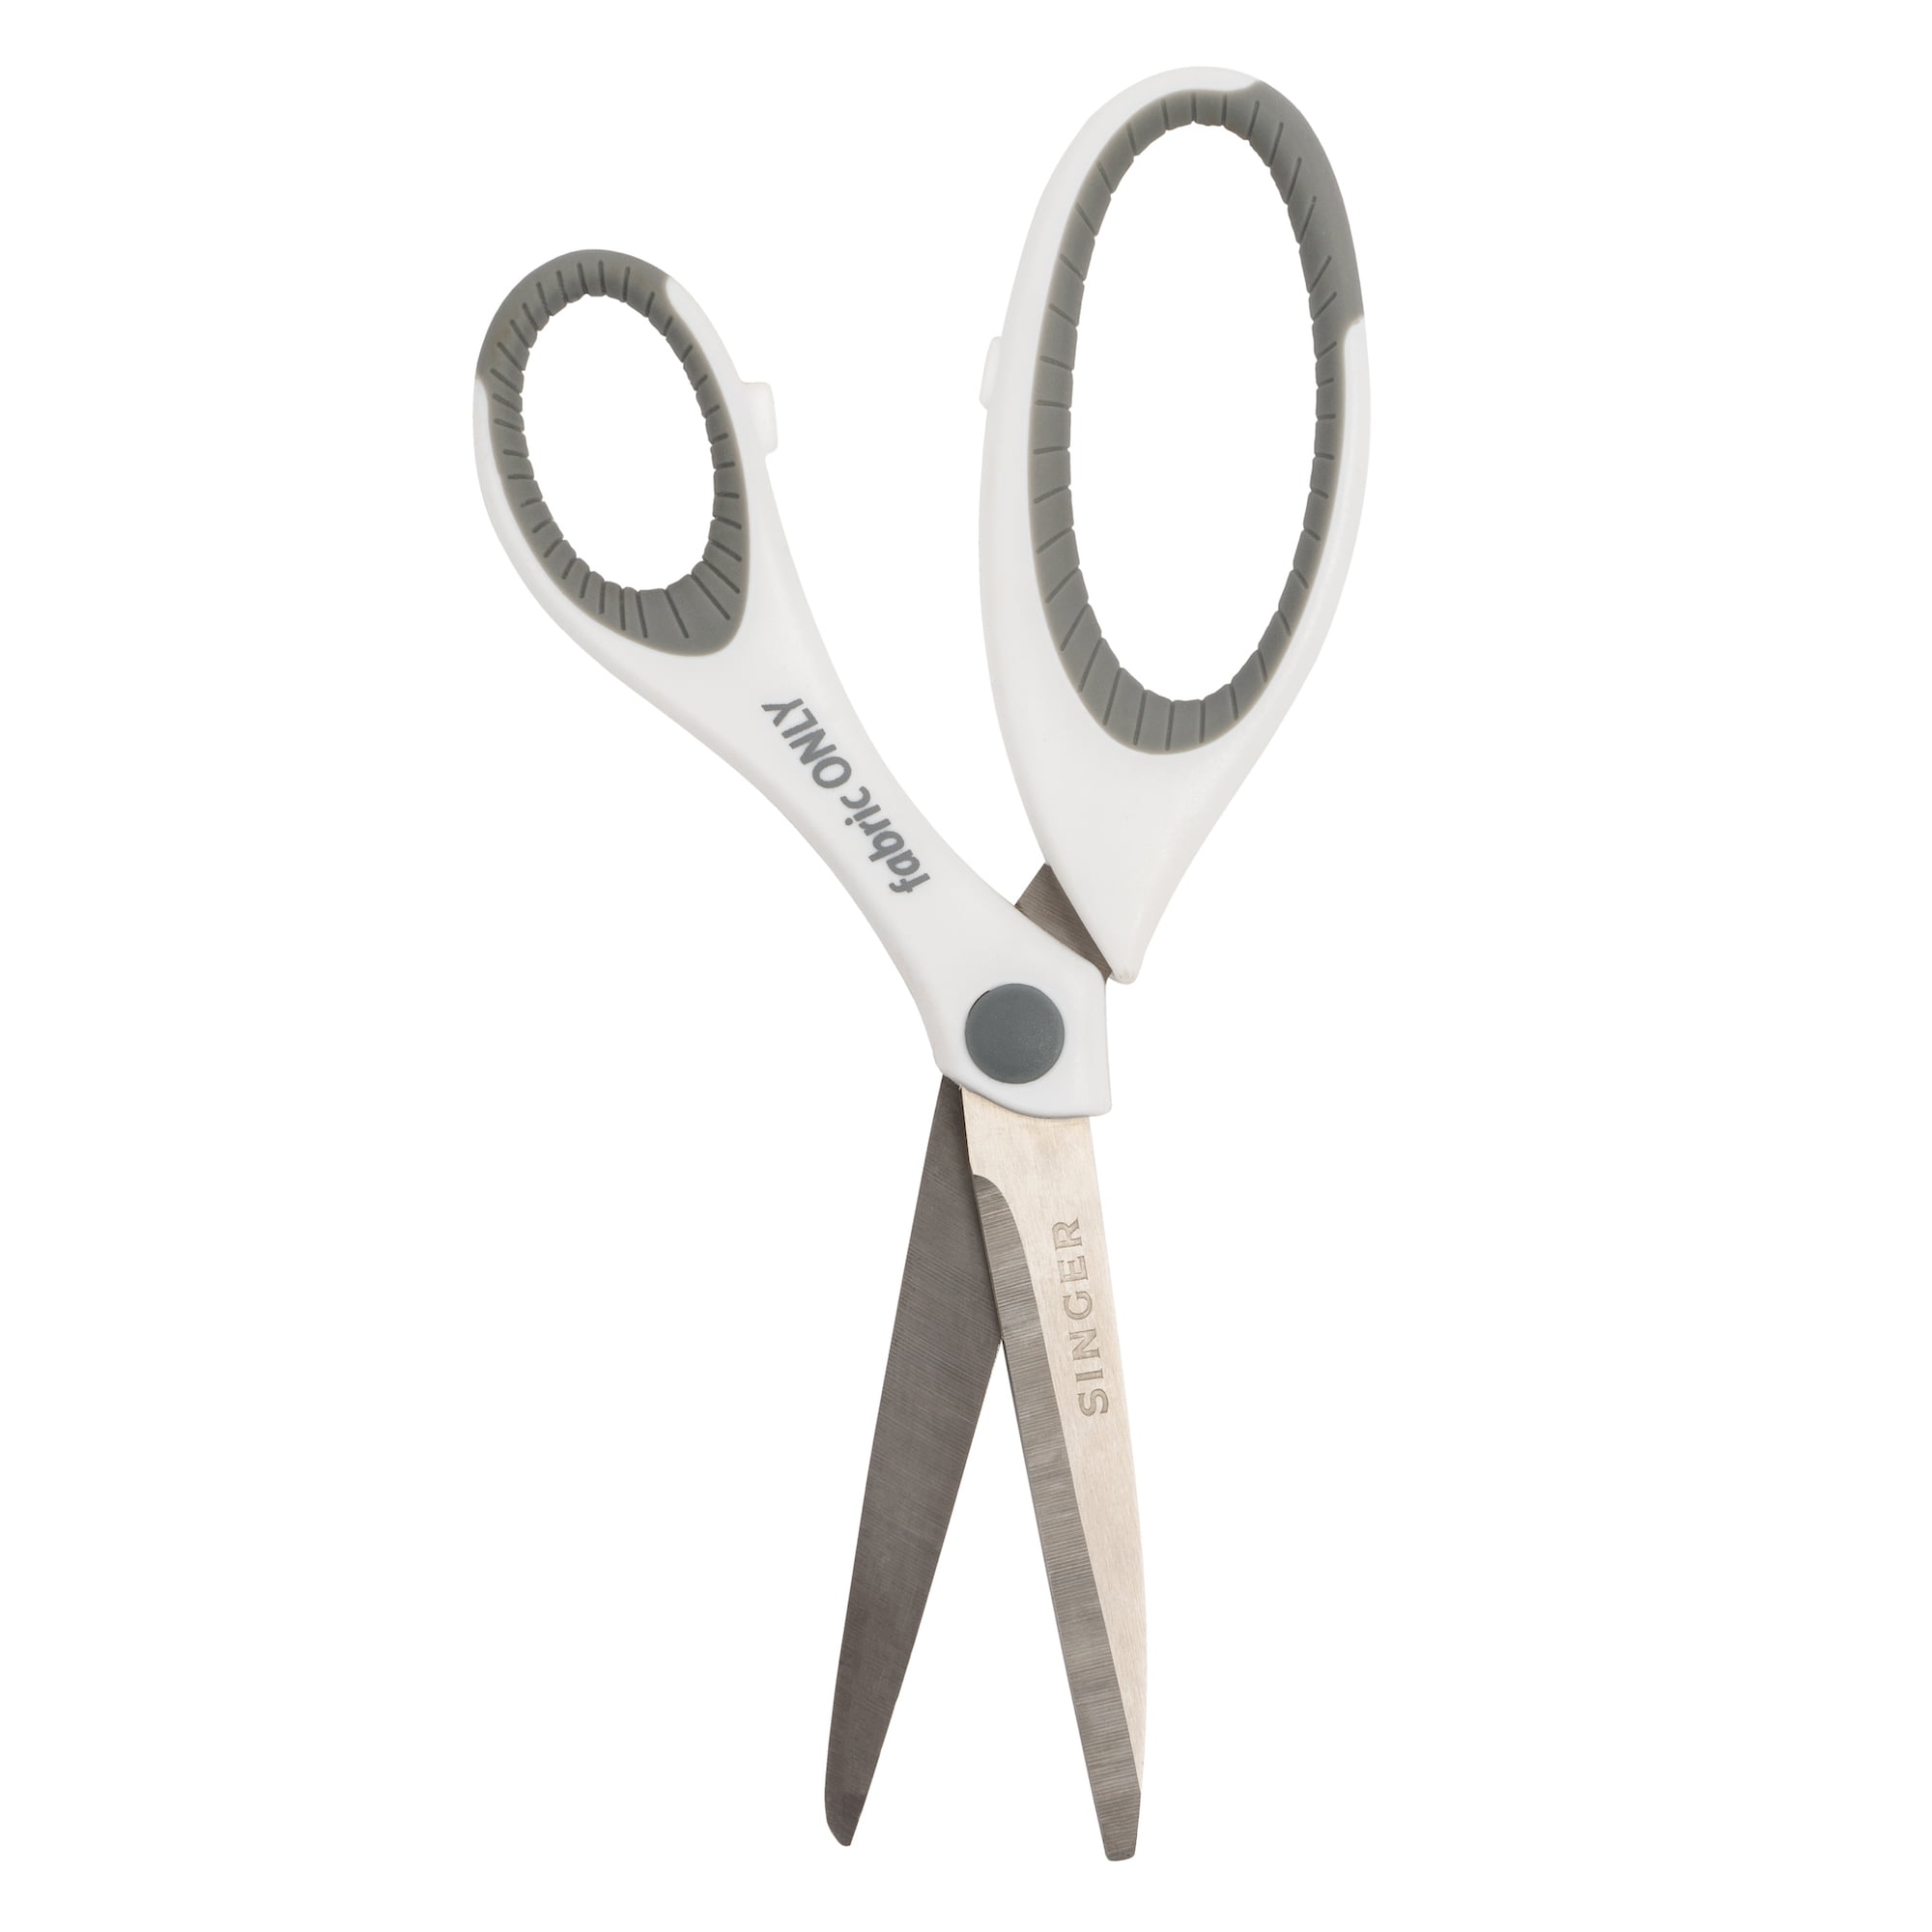 Singer Comfort Grip Craft Scissors 4 inch-Grey